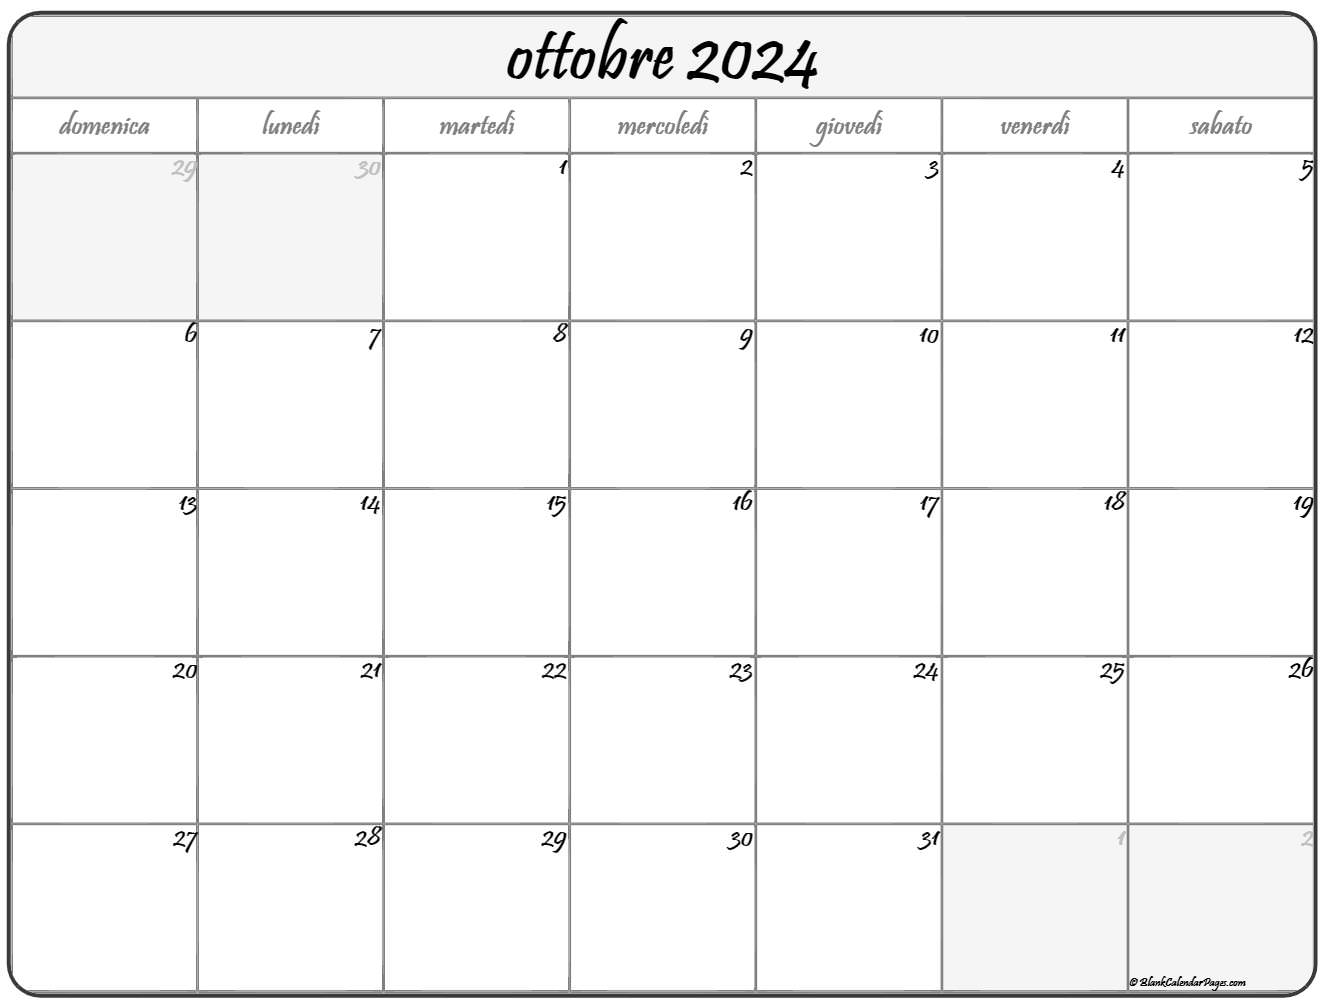 ottobre 2024 calendario gratis italiano Calendario ottobre